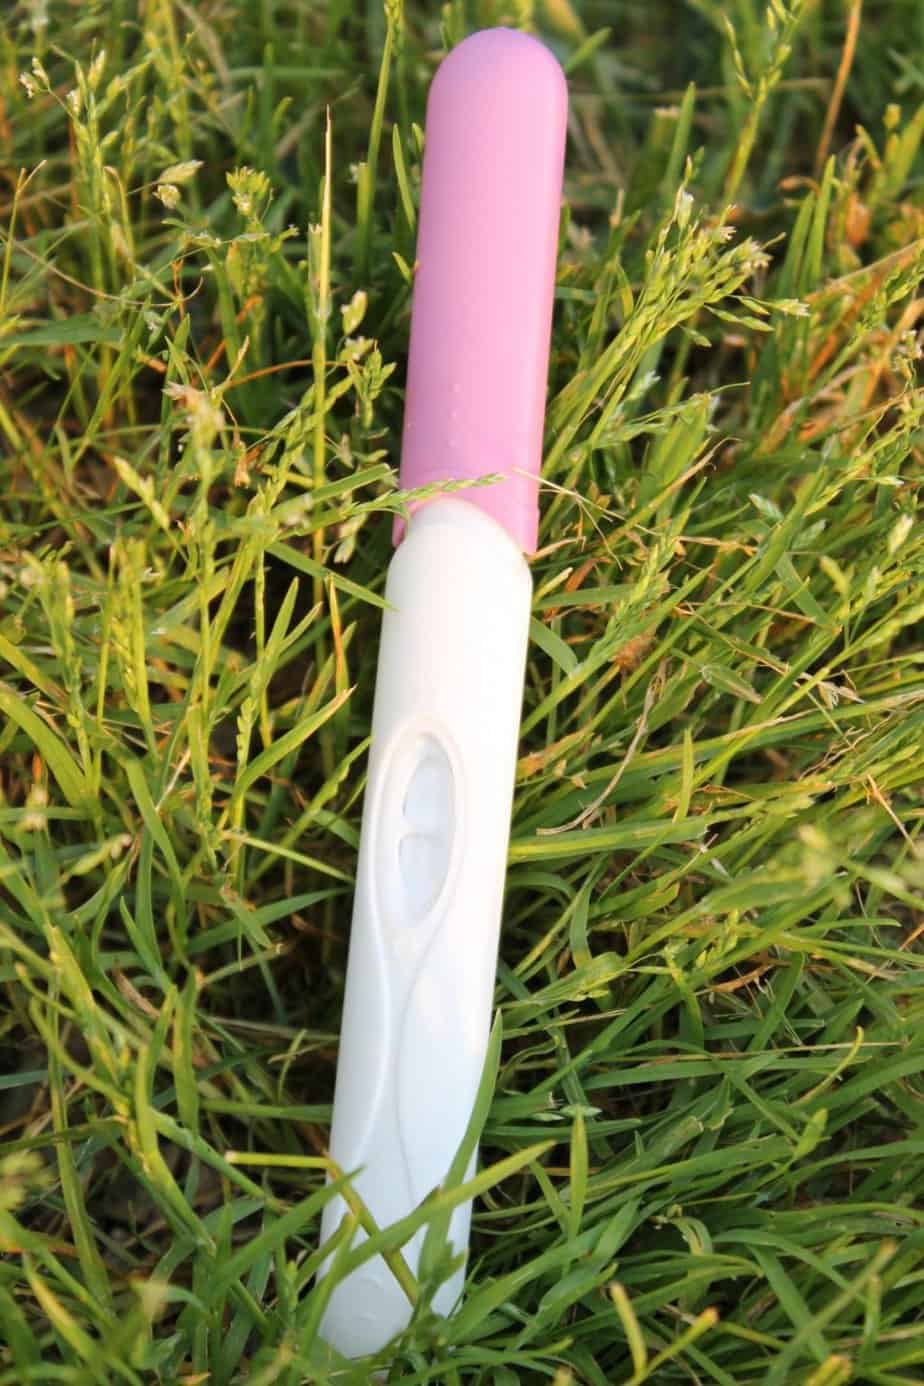 Soil tester kit lying in grass